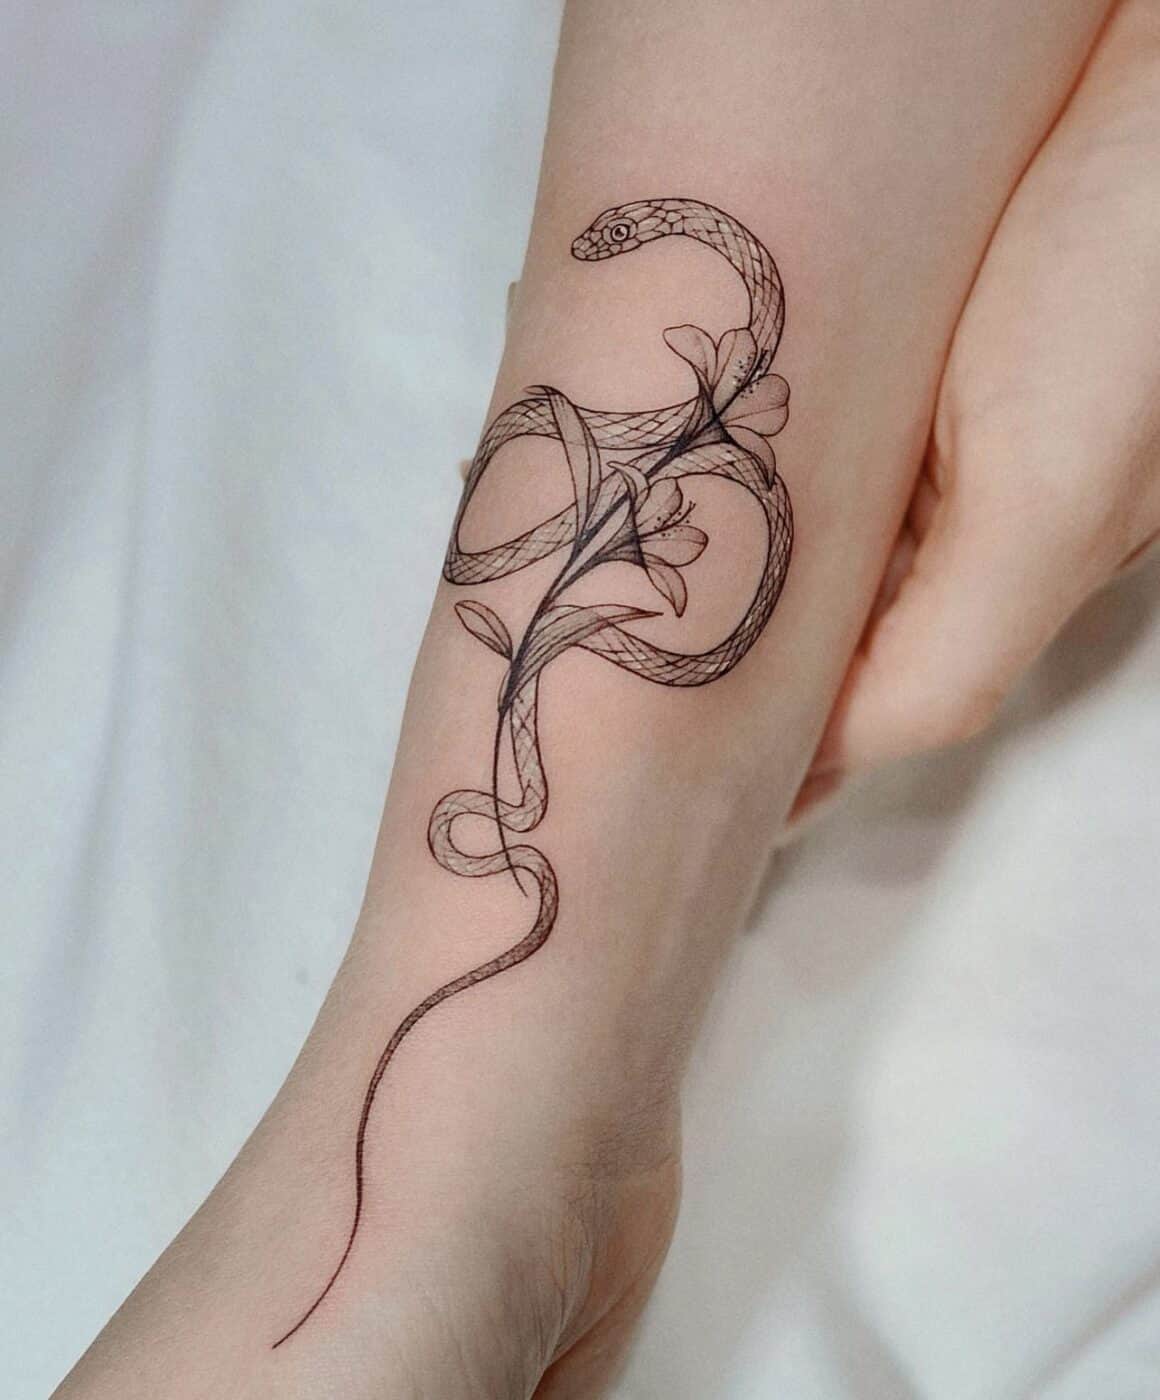 Snake Tattoo for Girls #snaketattoo #tattoo #snake #tattoos #ink #inked  #tattooartist #blackwork #art #tattooart #traditionaltattoo  #blackworktattoo #snakes #tattooideas #tattooed #blackandgreytattoo  #skulltattoo #tattoodesign #blacktattoo ...